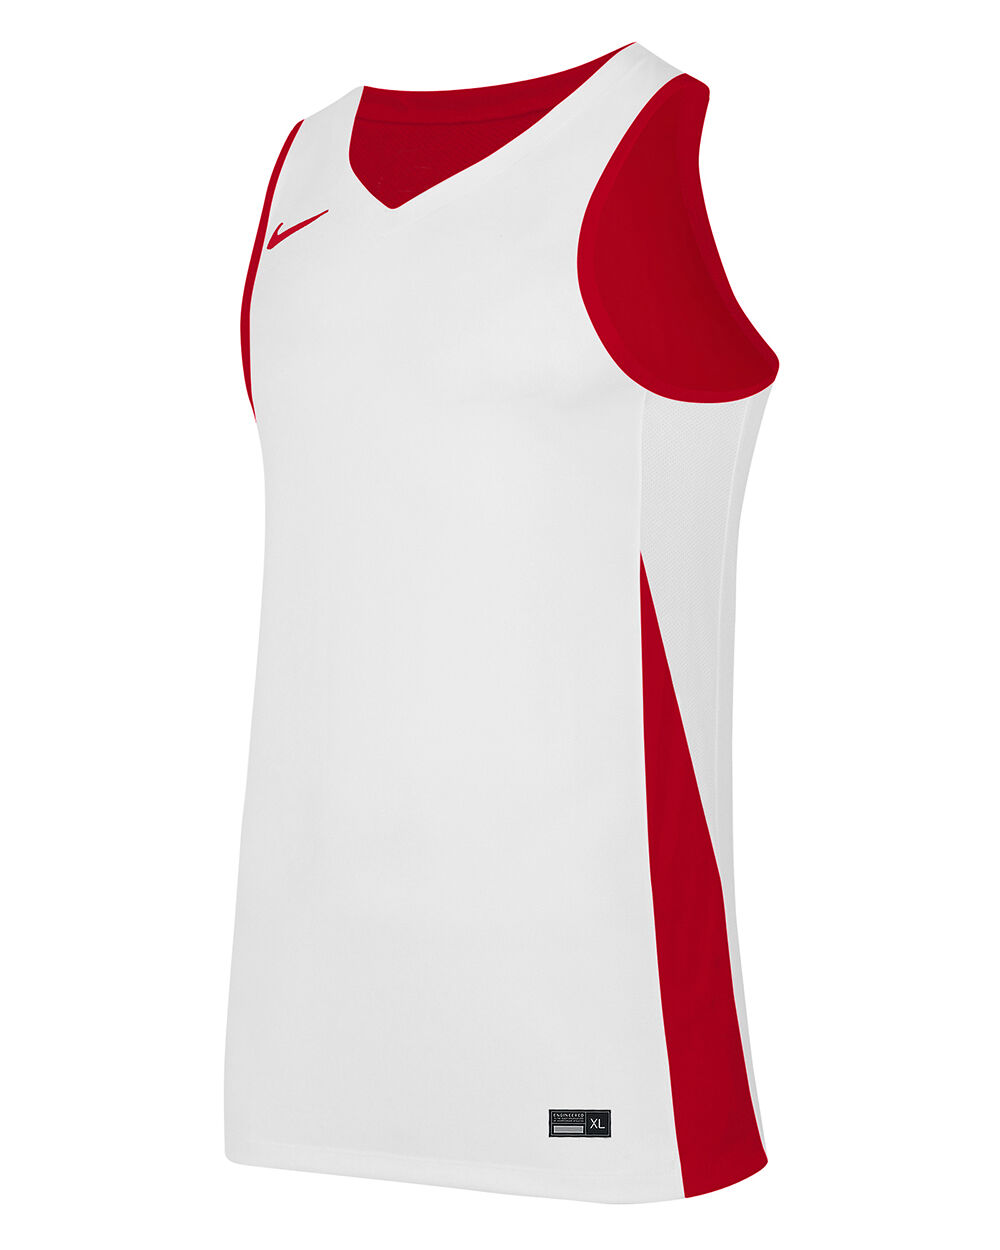 Nike Maglia da basket reversibile Team Rosso e Bianco Bambino NT0204-657 S